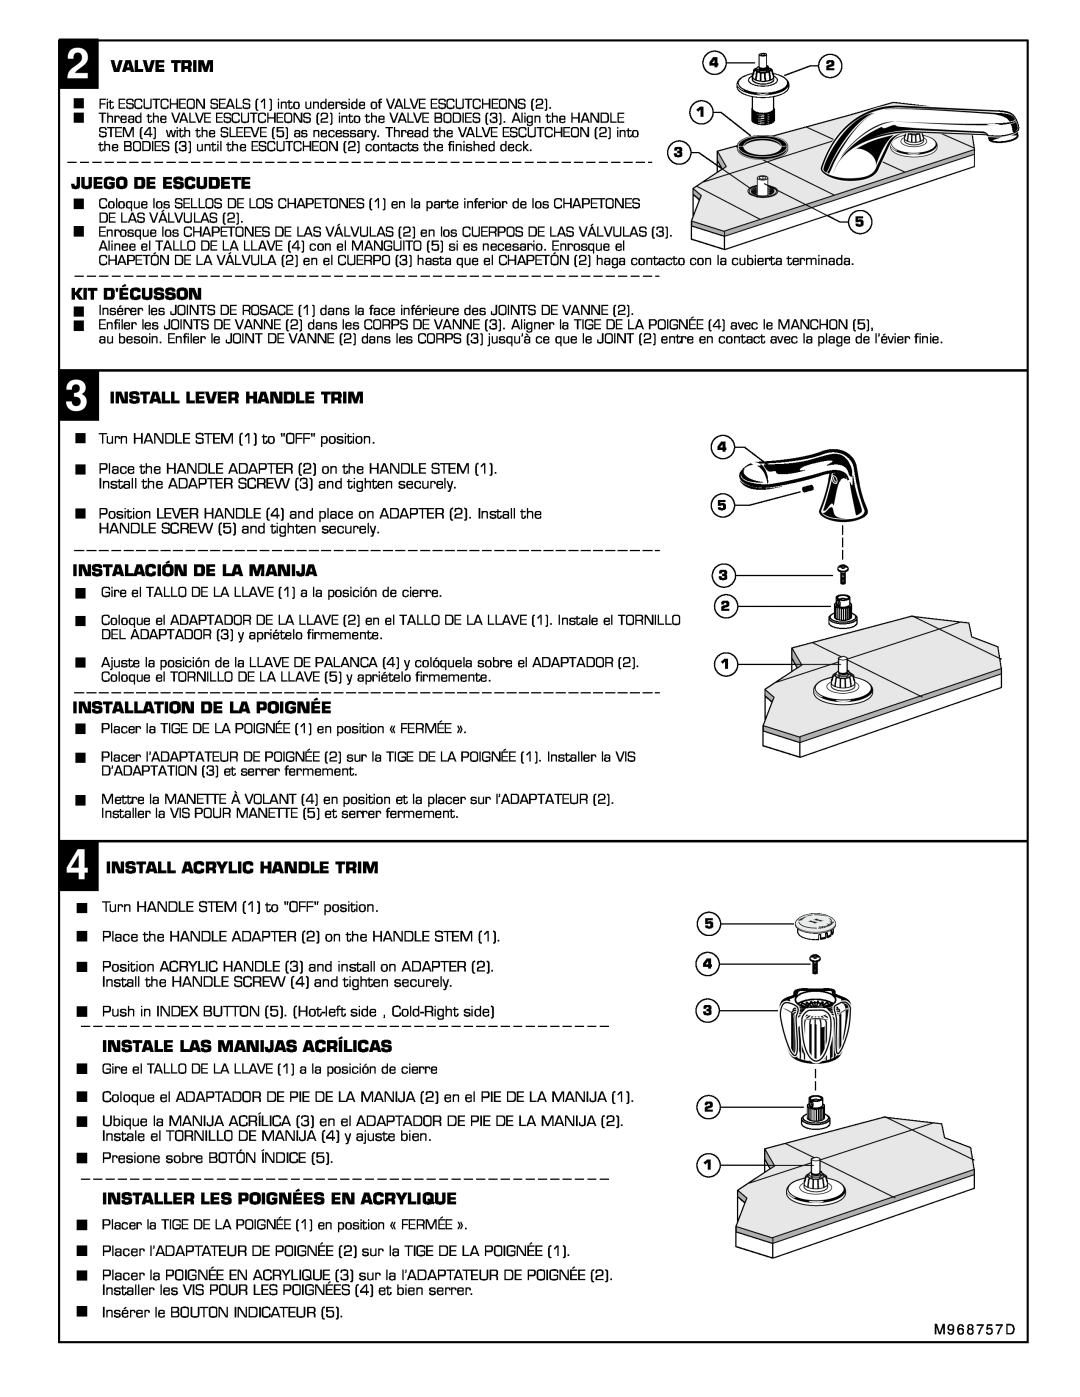 American Standard M968757D installation instructions Valve Trim, Juego De Escudete, Kit Décusson, Install Lever Handle Trim 